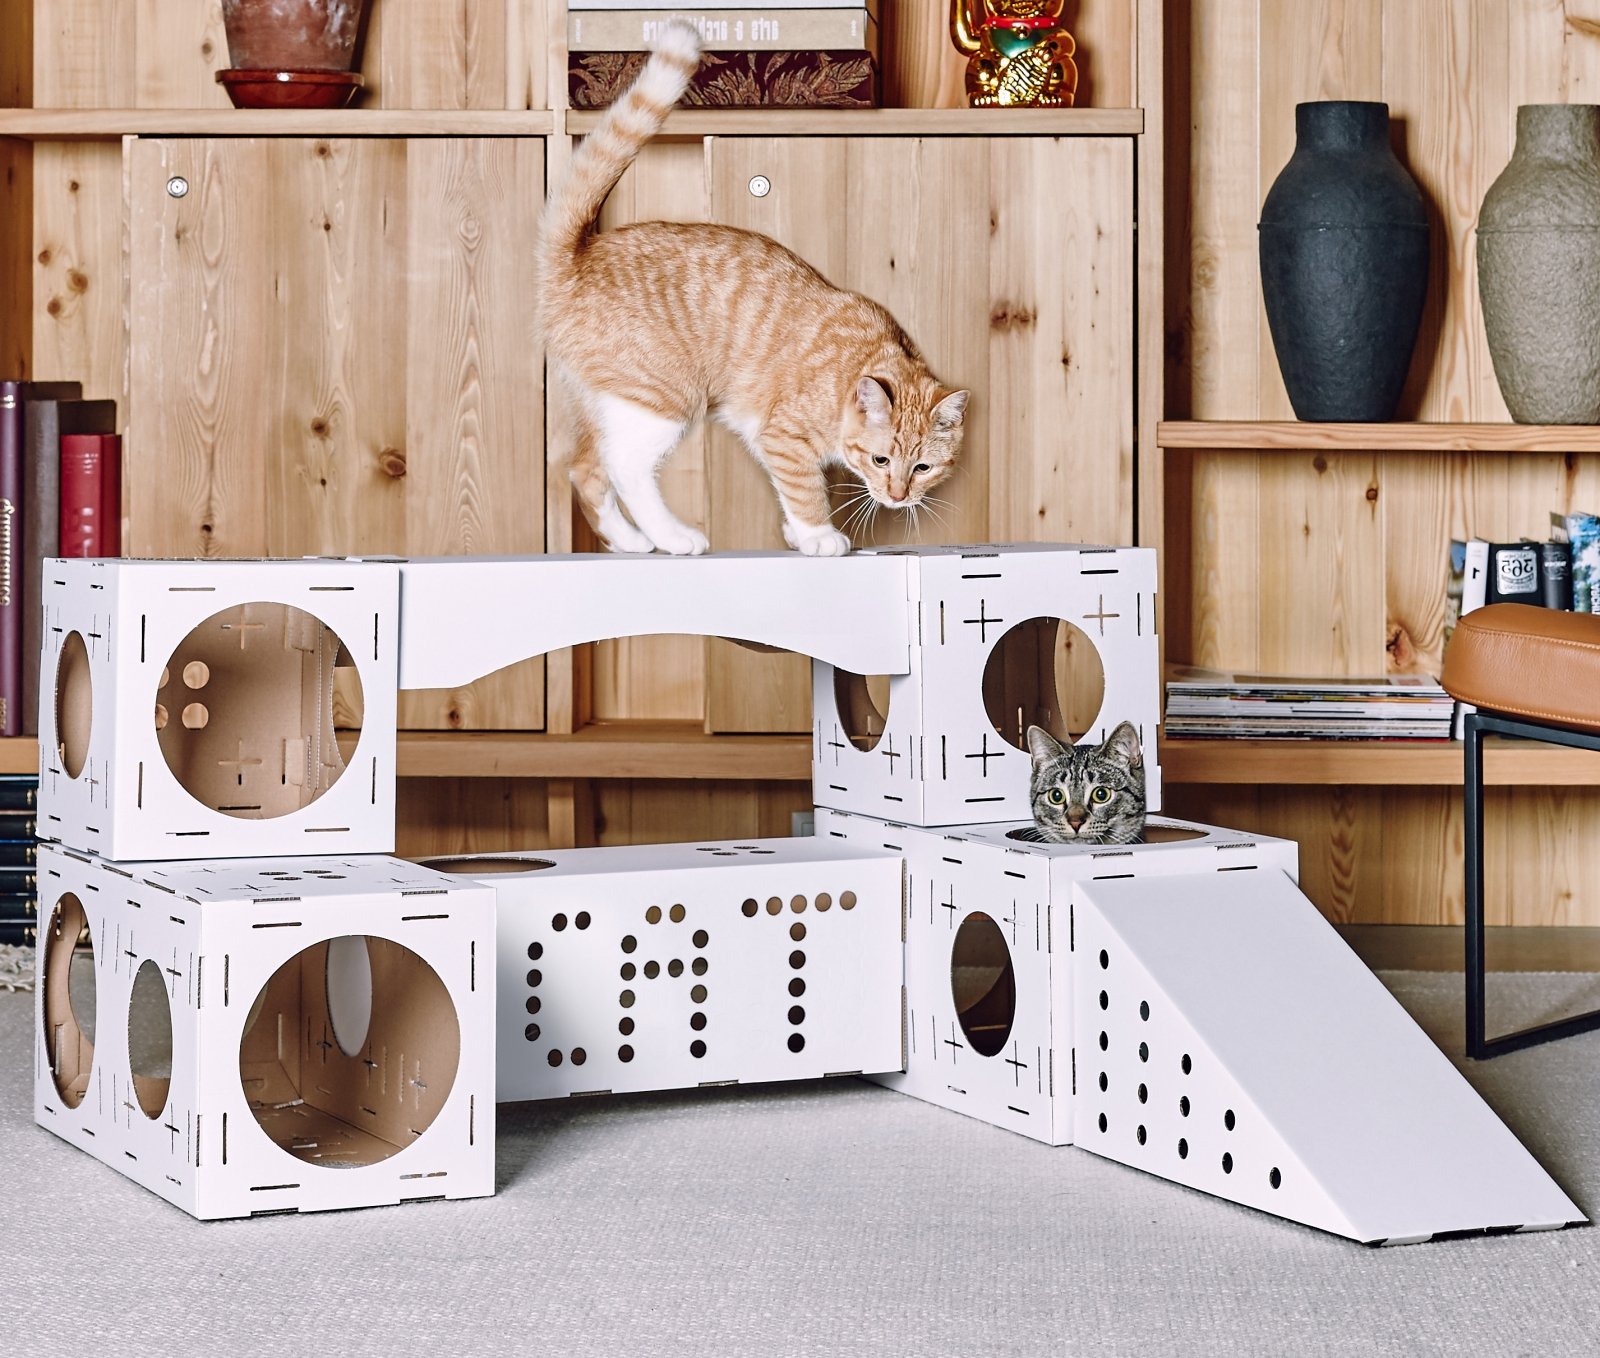 Домик для кошки своими руками: материалы, изготовление, идеи оформления